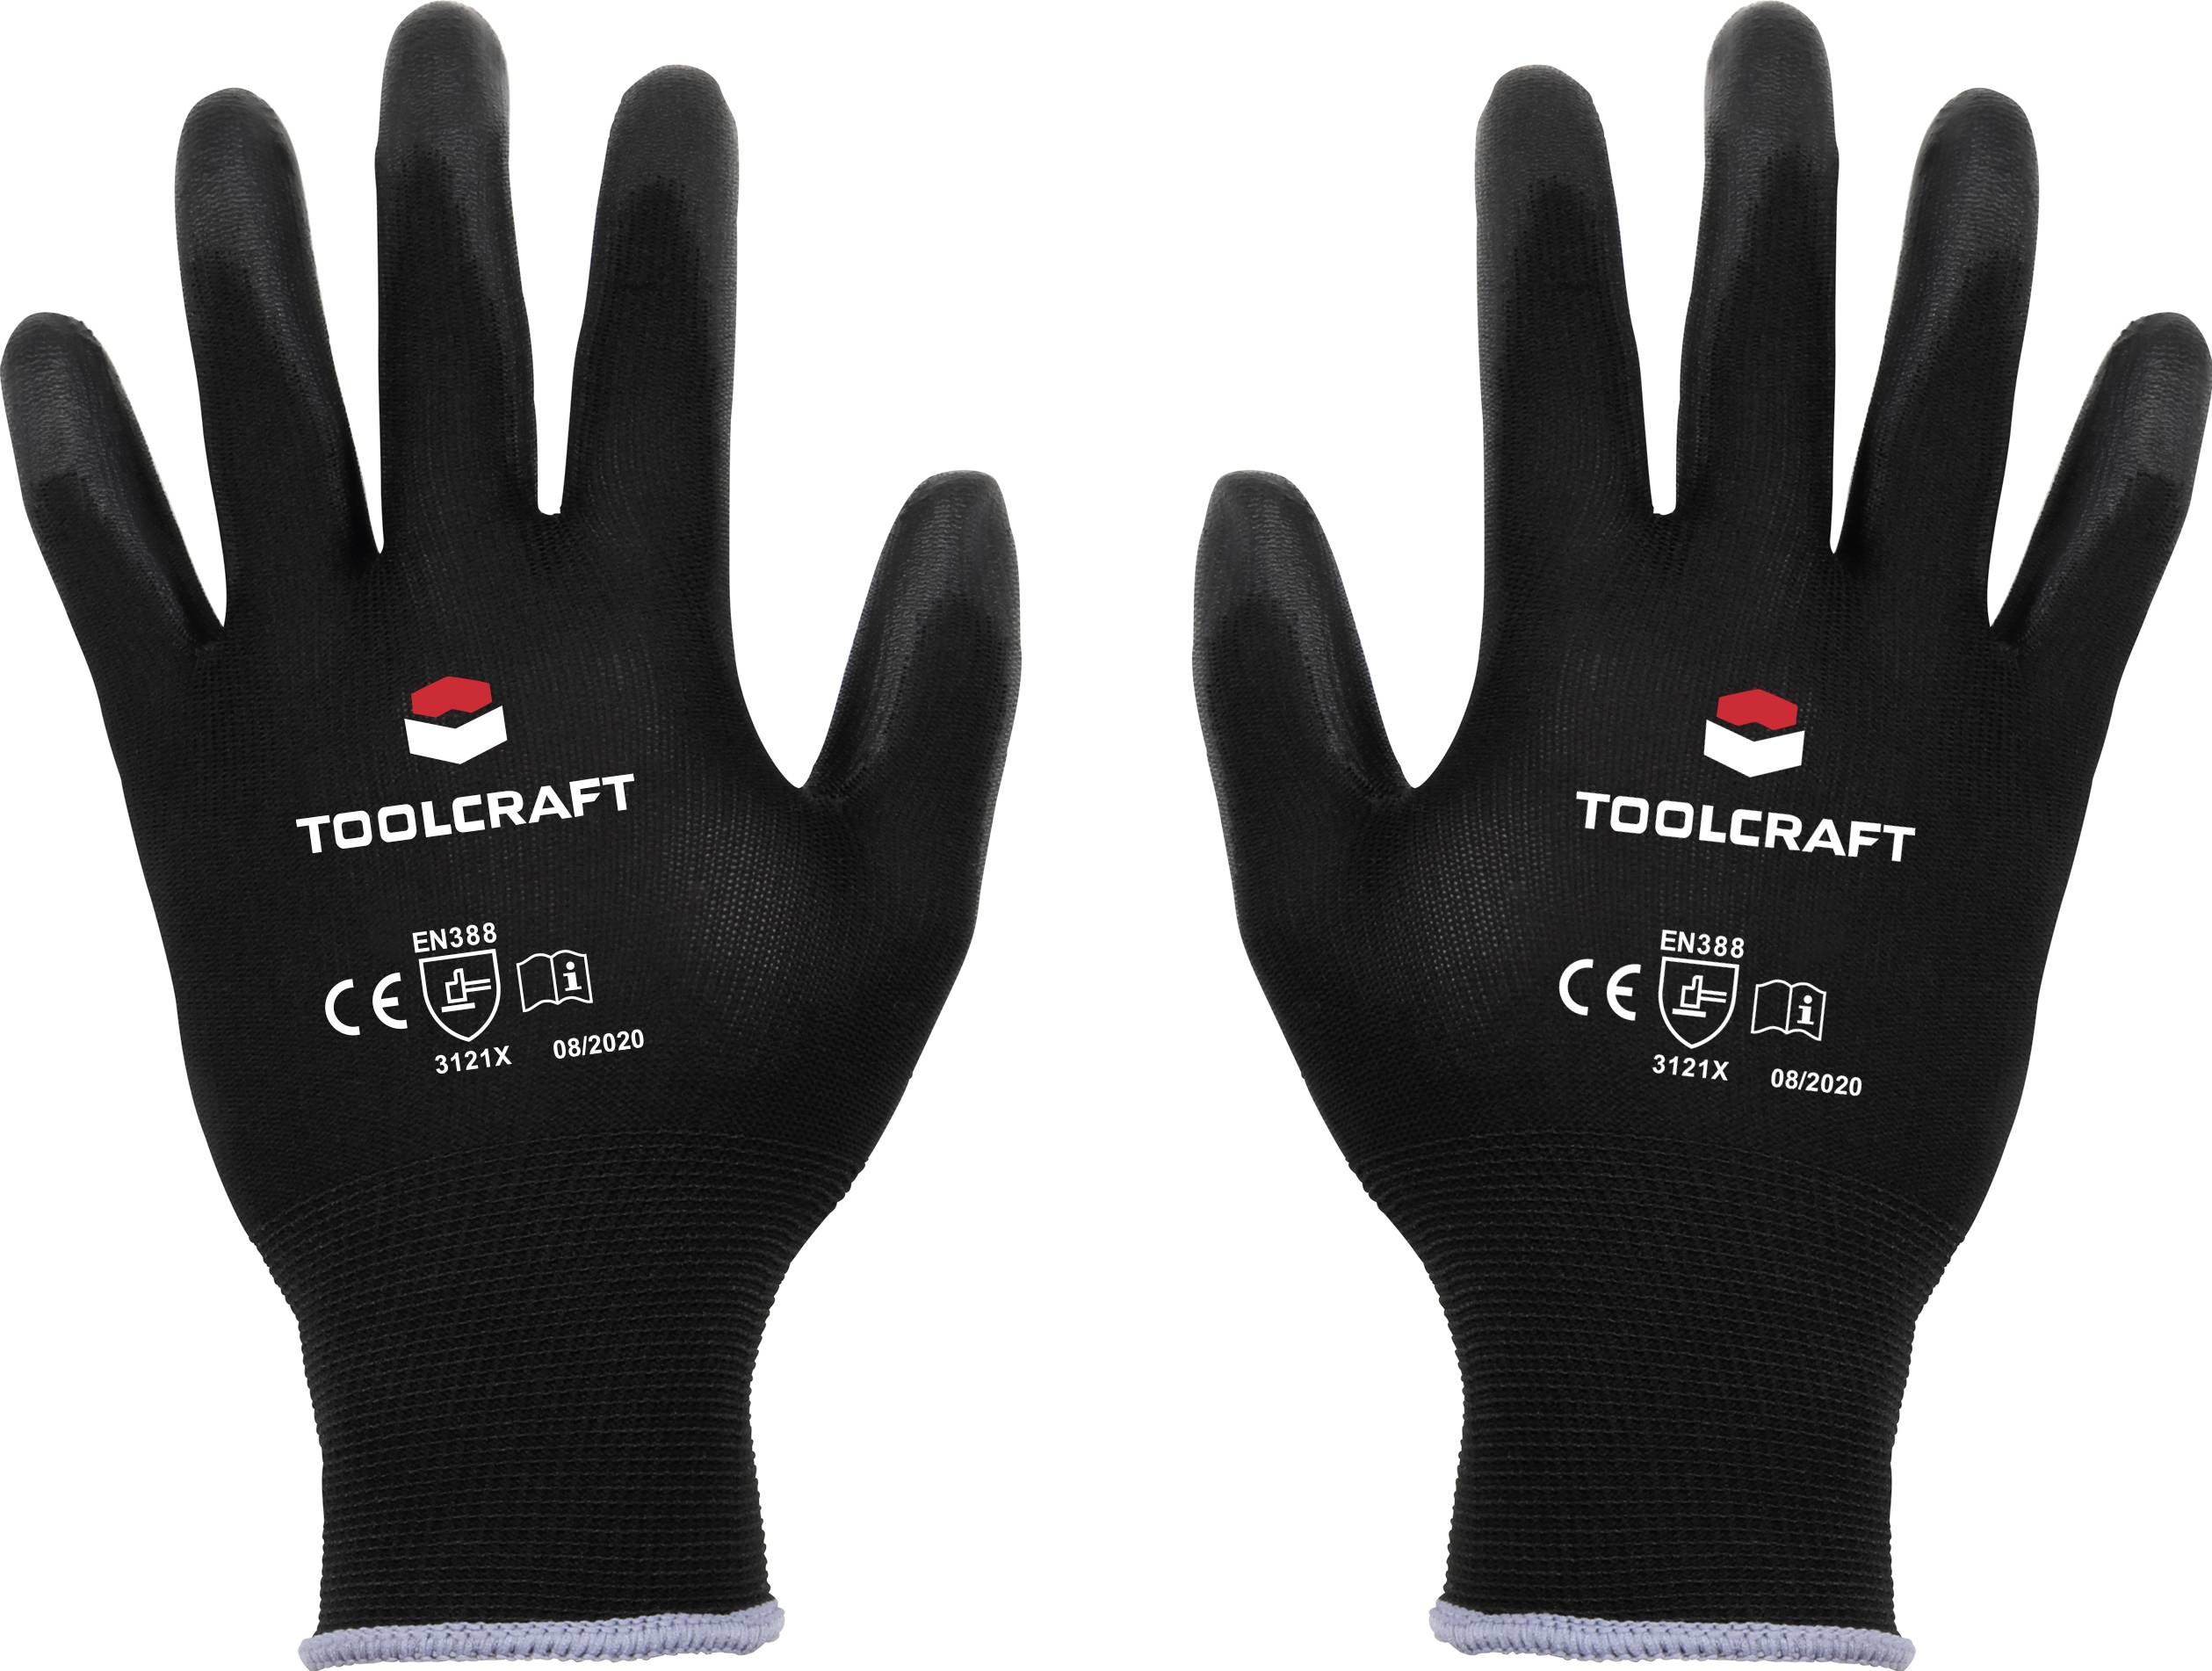 Pracovní rukavice TOOLCRAFT TO-5621478, velikost rukavic: 7